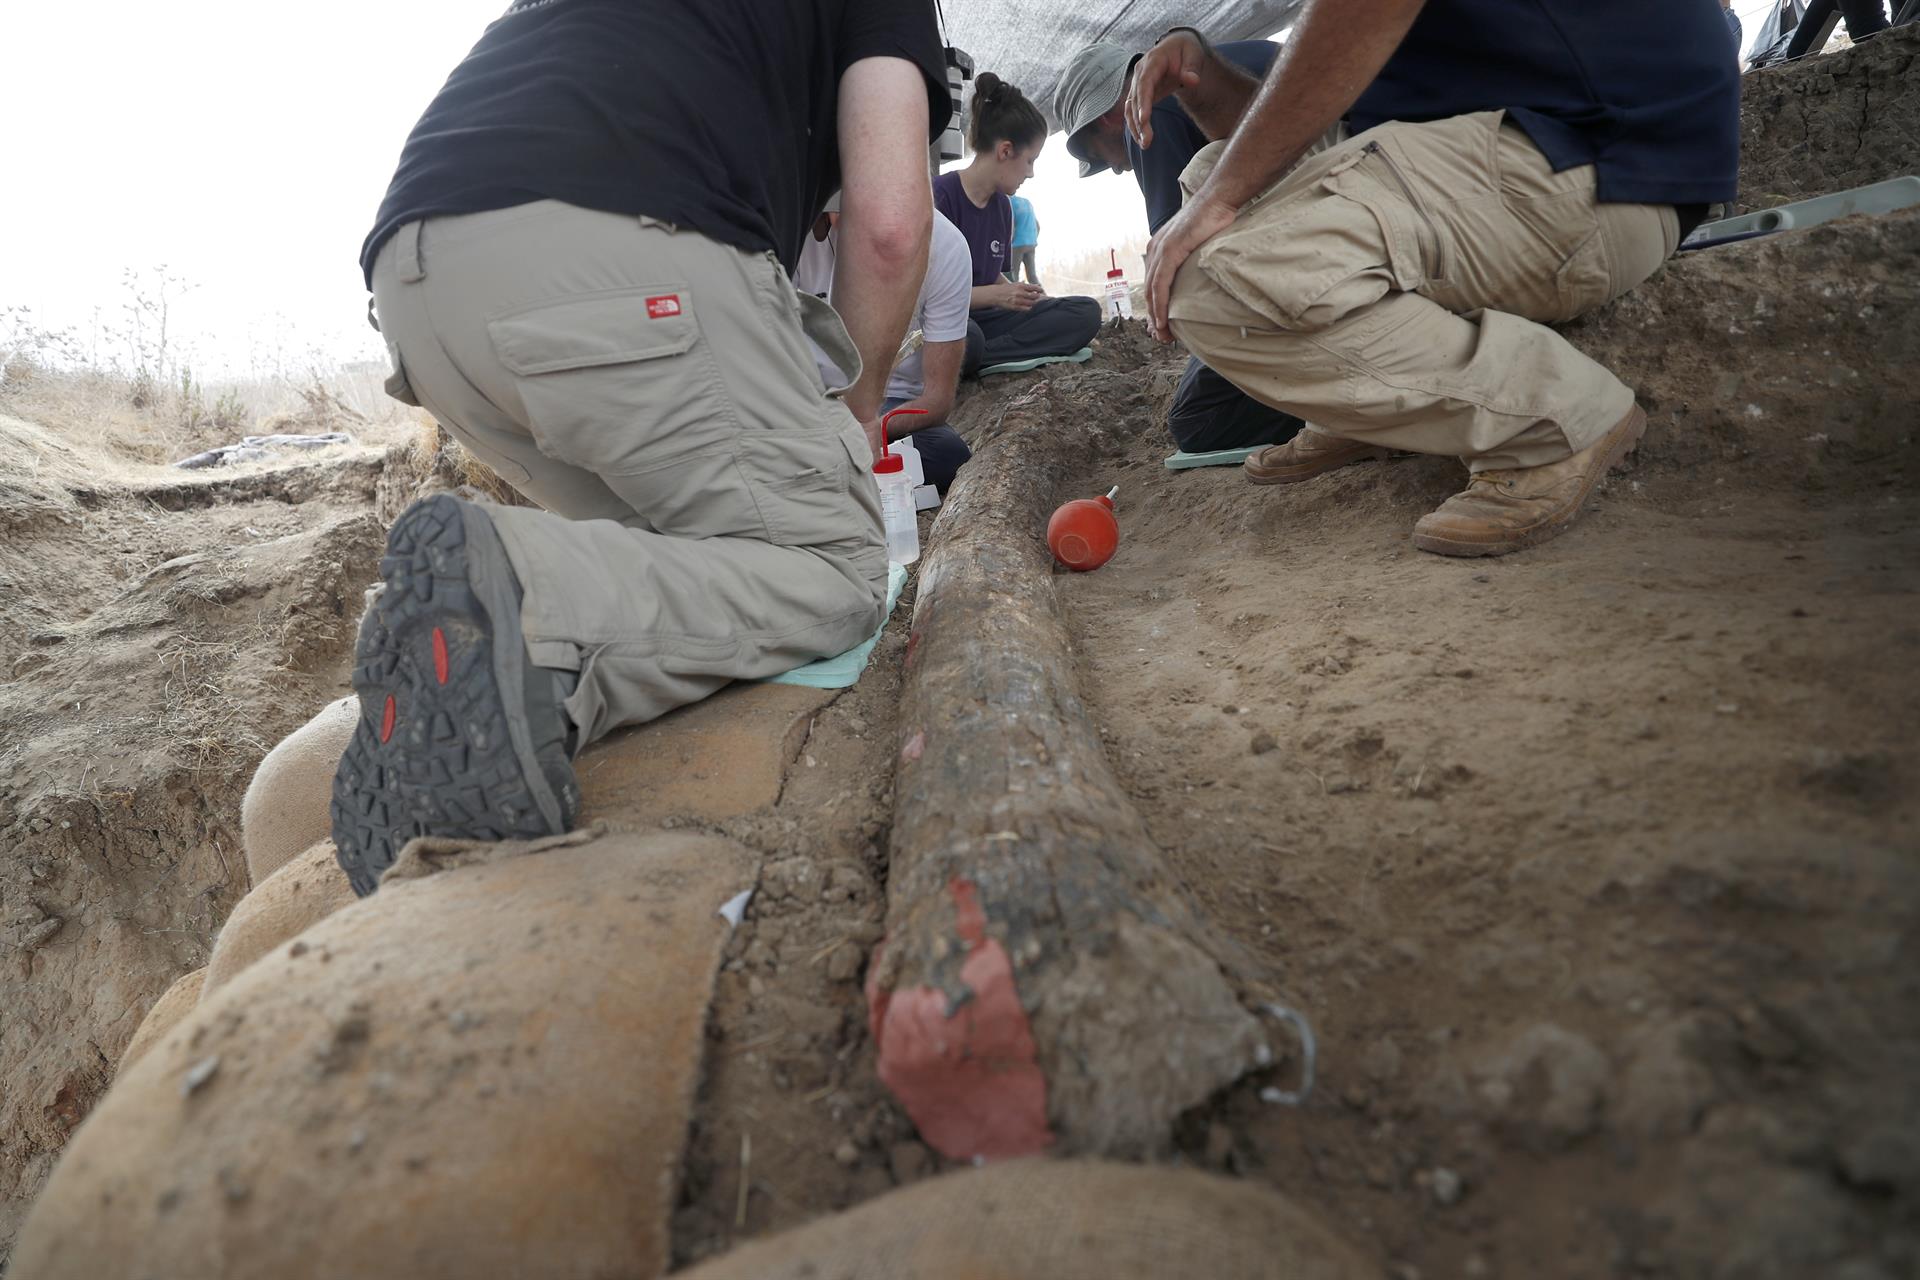 Descubren en Israel un colmillo de elefante de hace medio millón de años